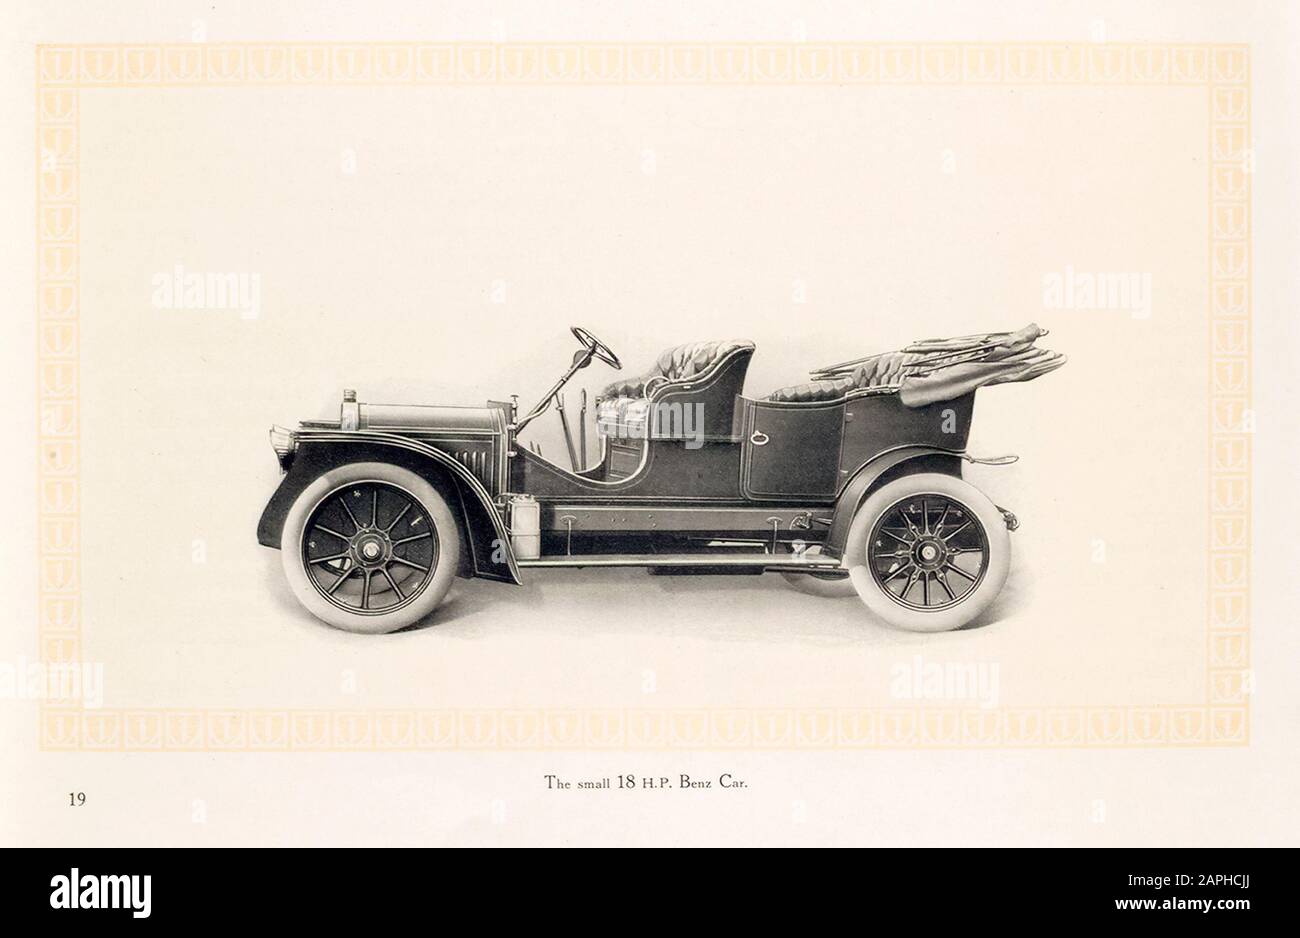 Auto d'epoca, la piccola auto da 18 hp Benz del catalogo commerciale Benz & Co, illustrazione 1909 Foto Stock